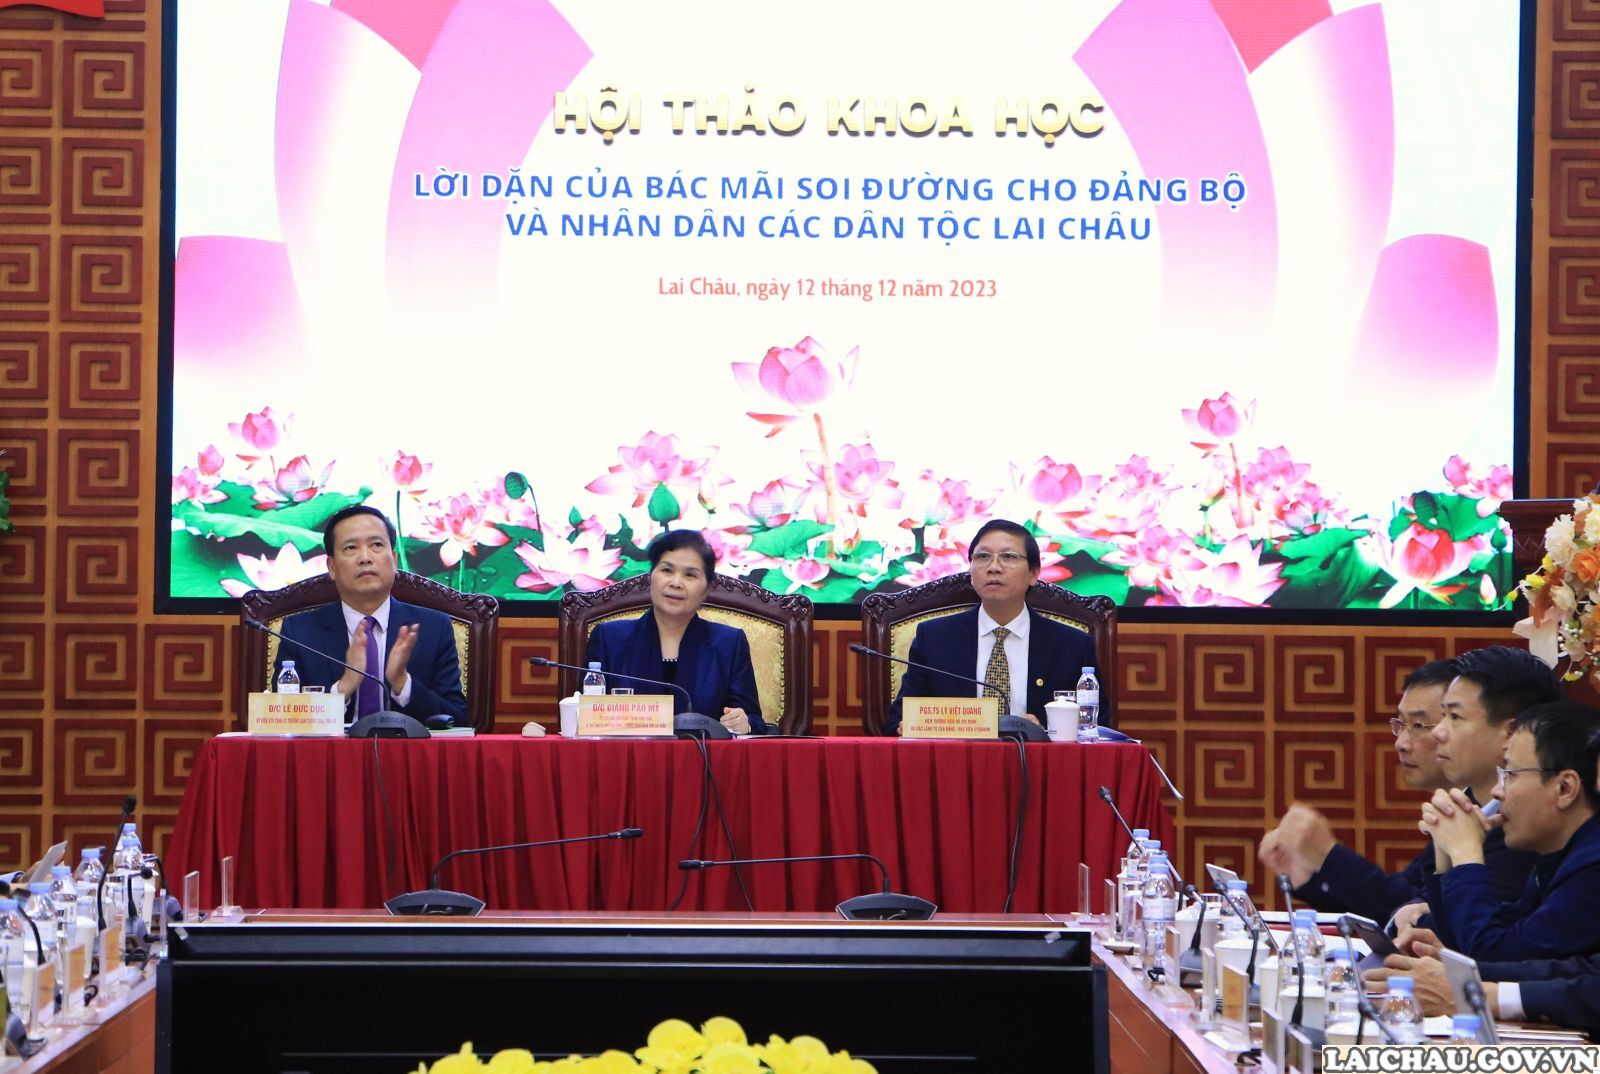 Lai Châu: Hội thảo khoa học “Lời dặn của Bác mãi soi đường cho Đảng bộ và Nhân dân các dân tộc Lai Châu”